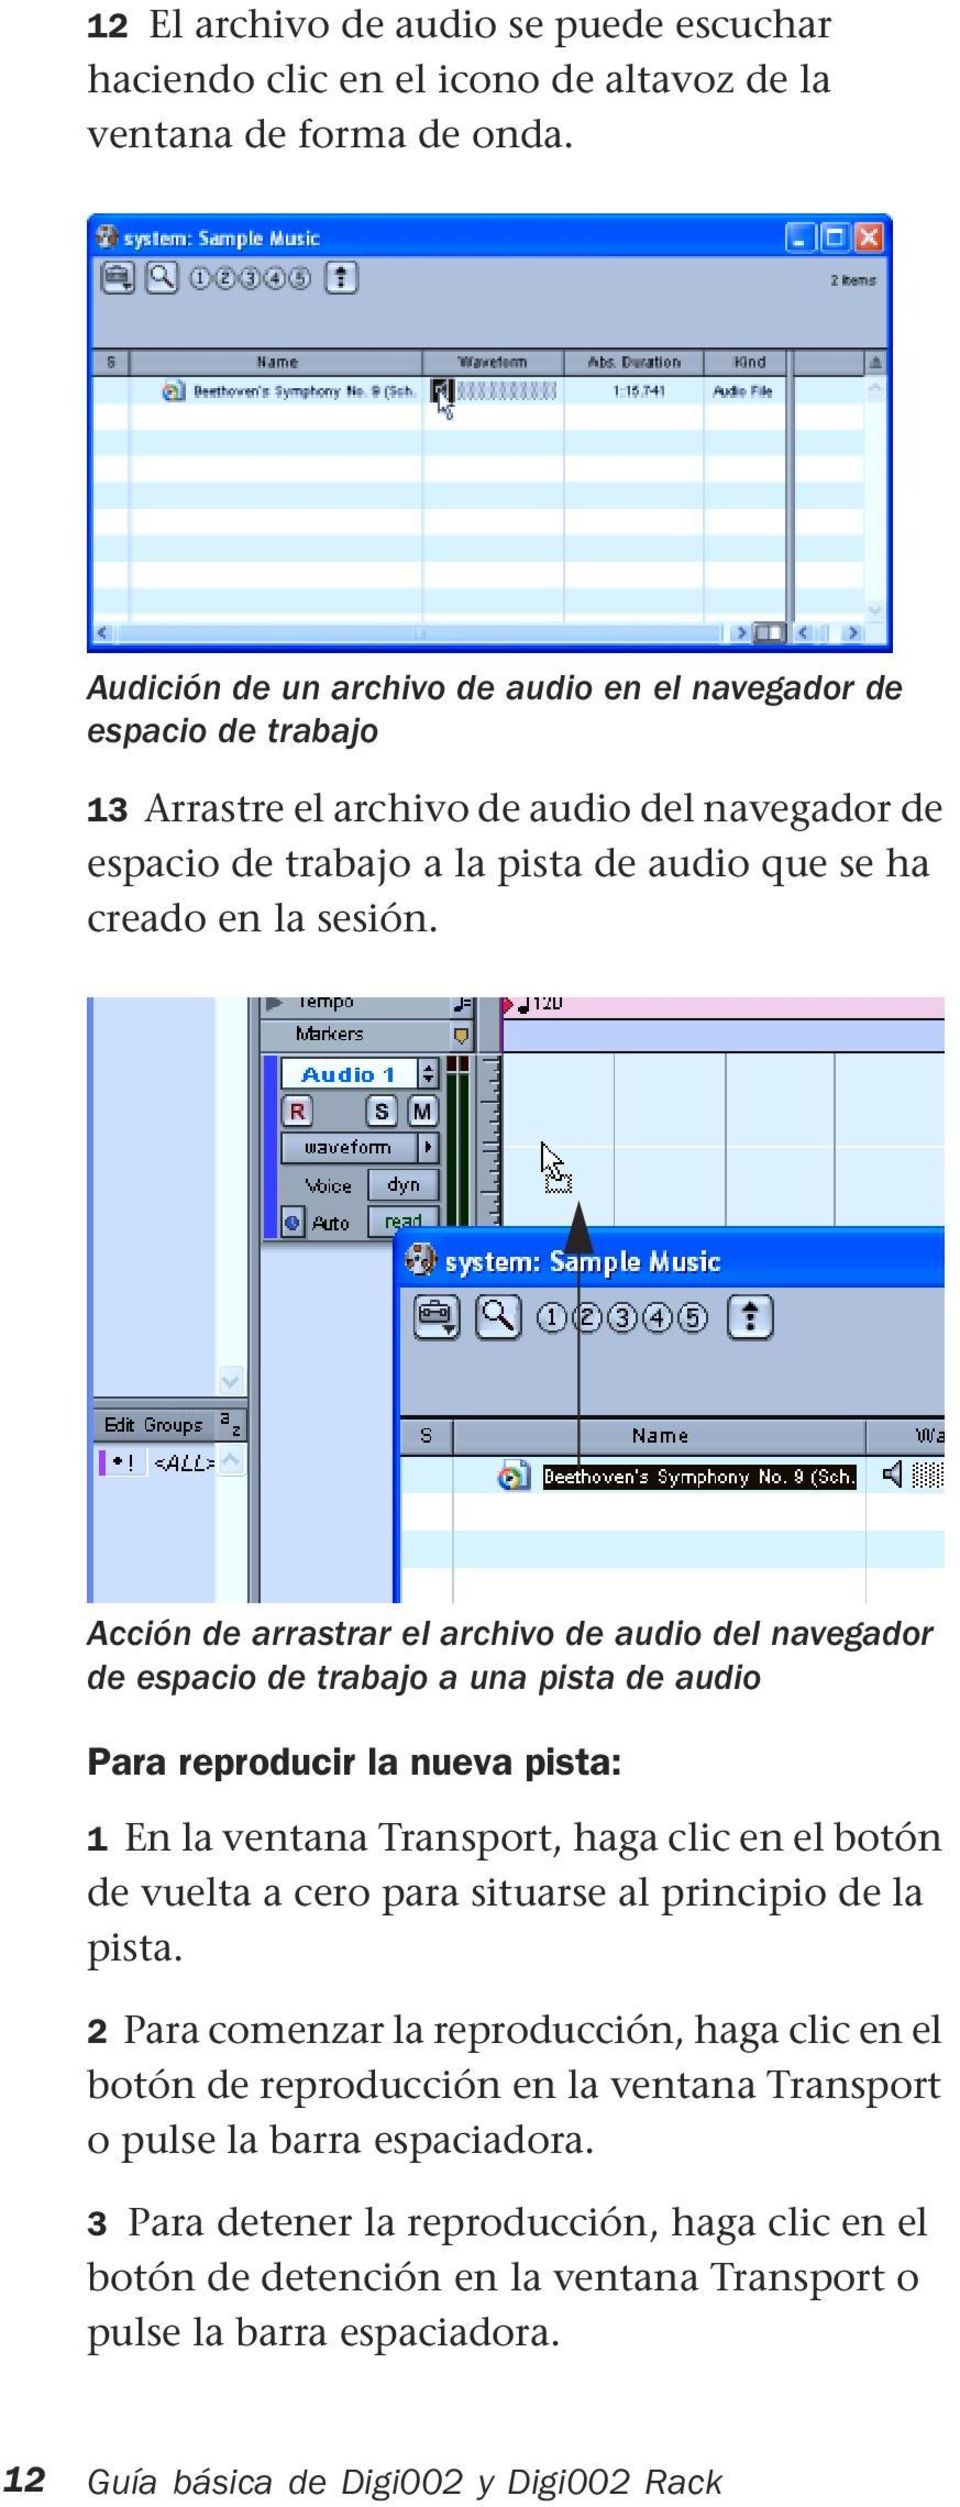 Acción de arrastrar el archivo de audio del navegador de espacio de trabajo a una pista de audio Para reproducir la nueva pista: 1 En la ventana Transport, haga clic en el botón de vuelta a cero para